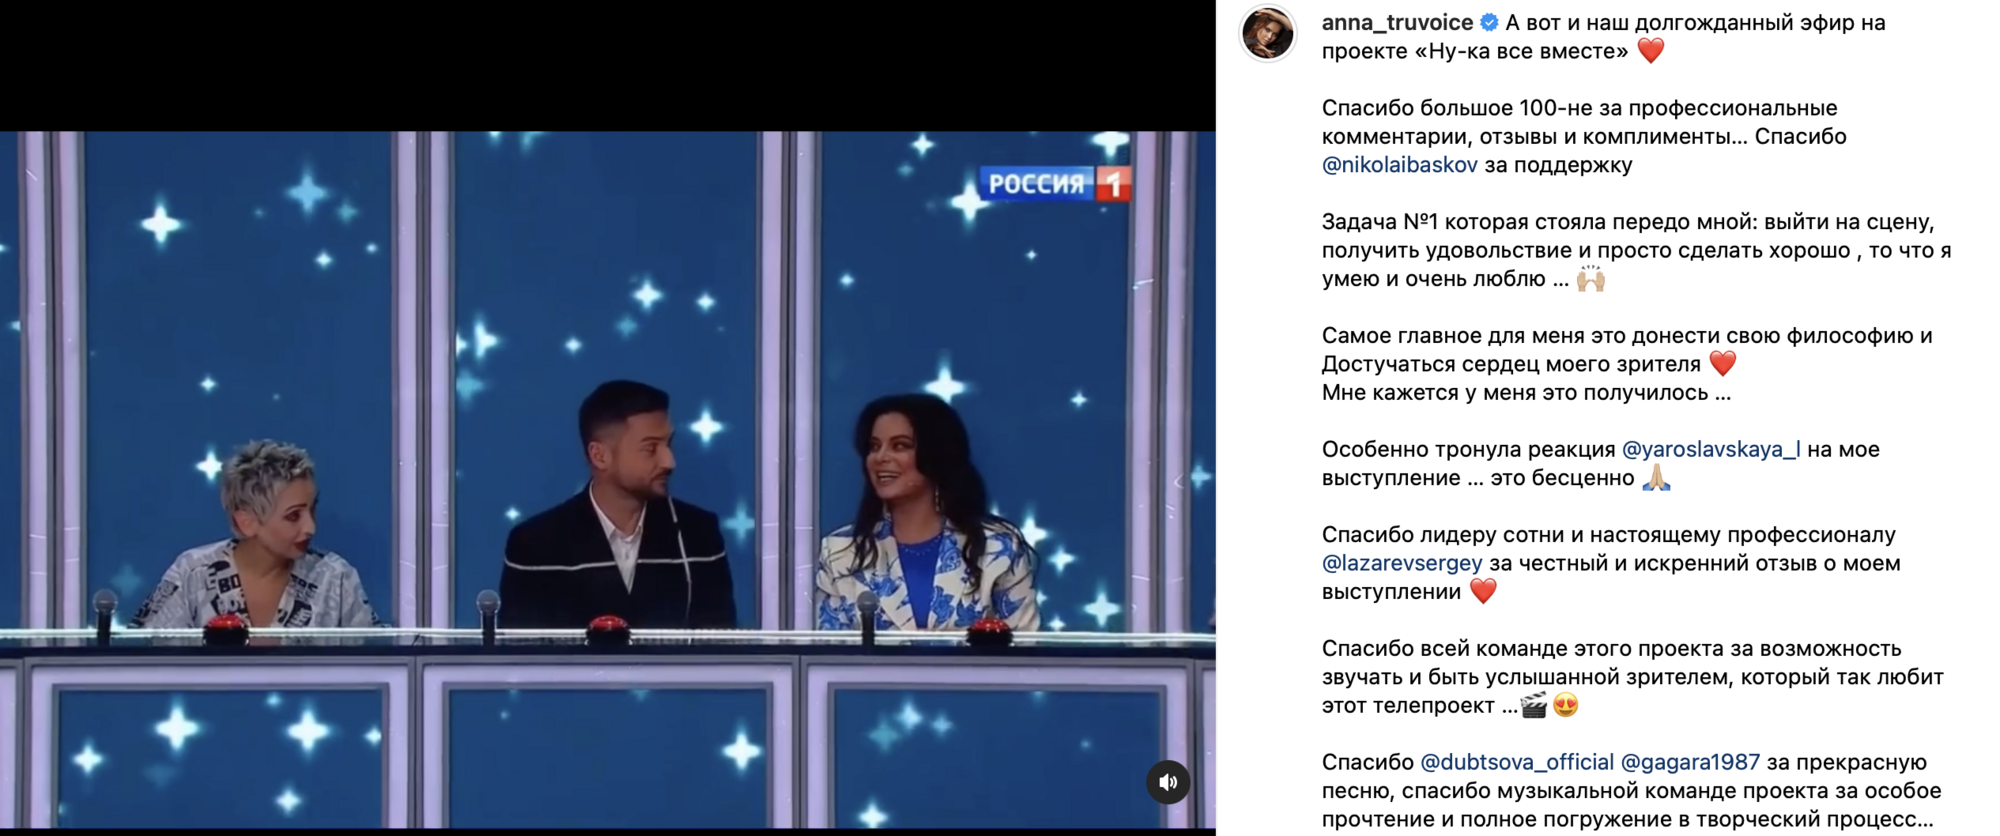 Пела песни Тины Кароль, а теперь развлекает путинистов: финалистка "Голосу країни" и "Х-Фактора" засветилась на пропагандистском канале